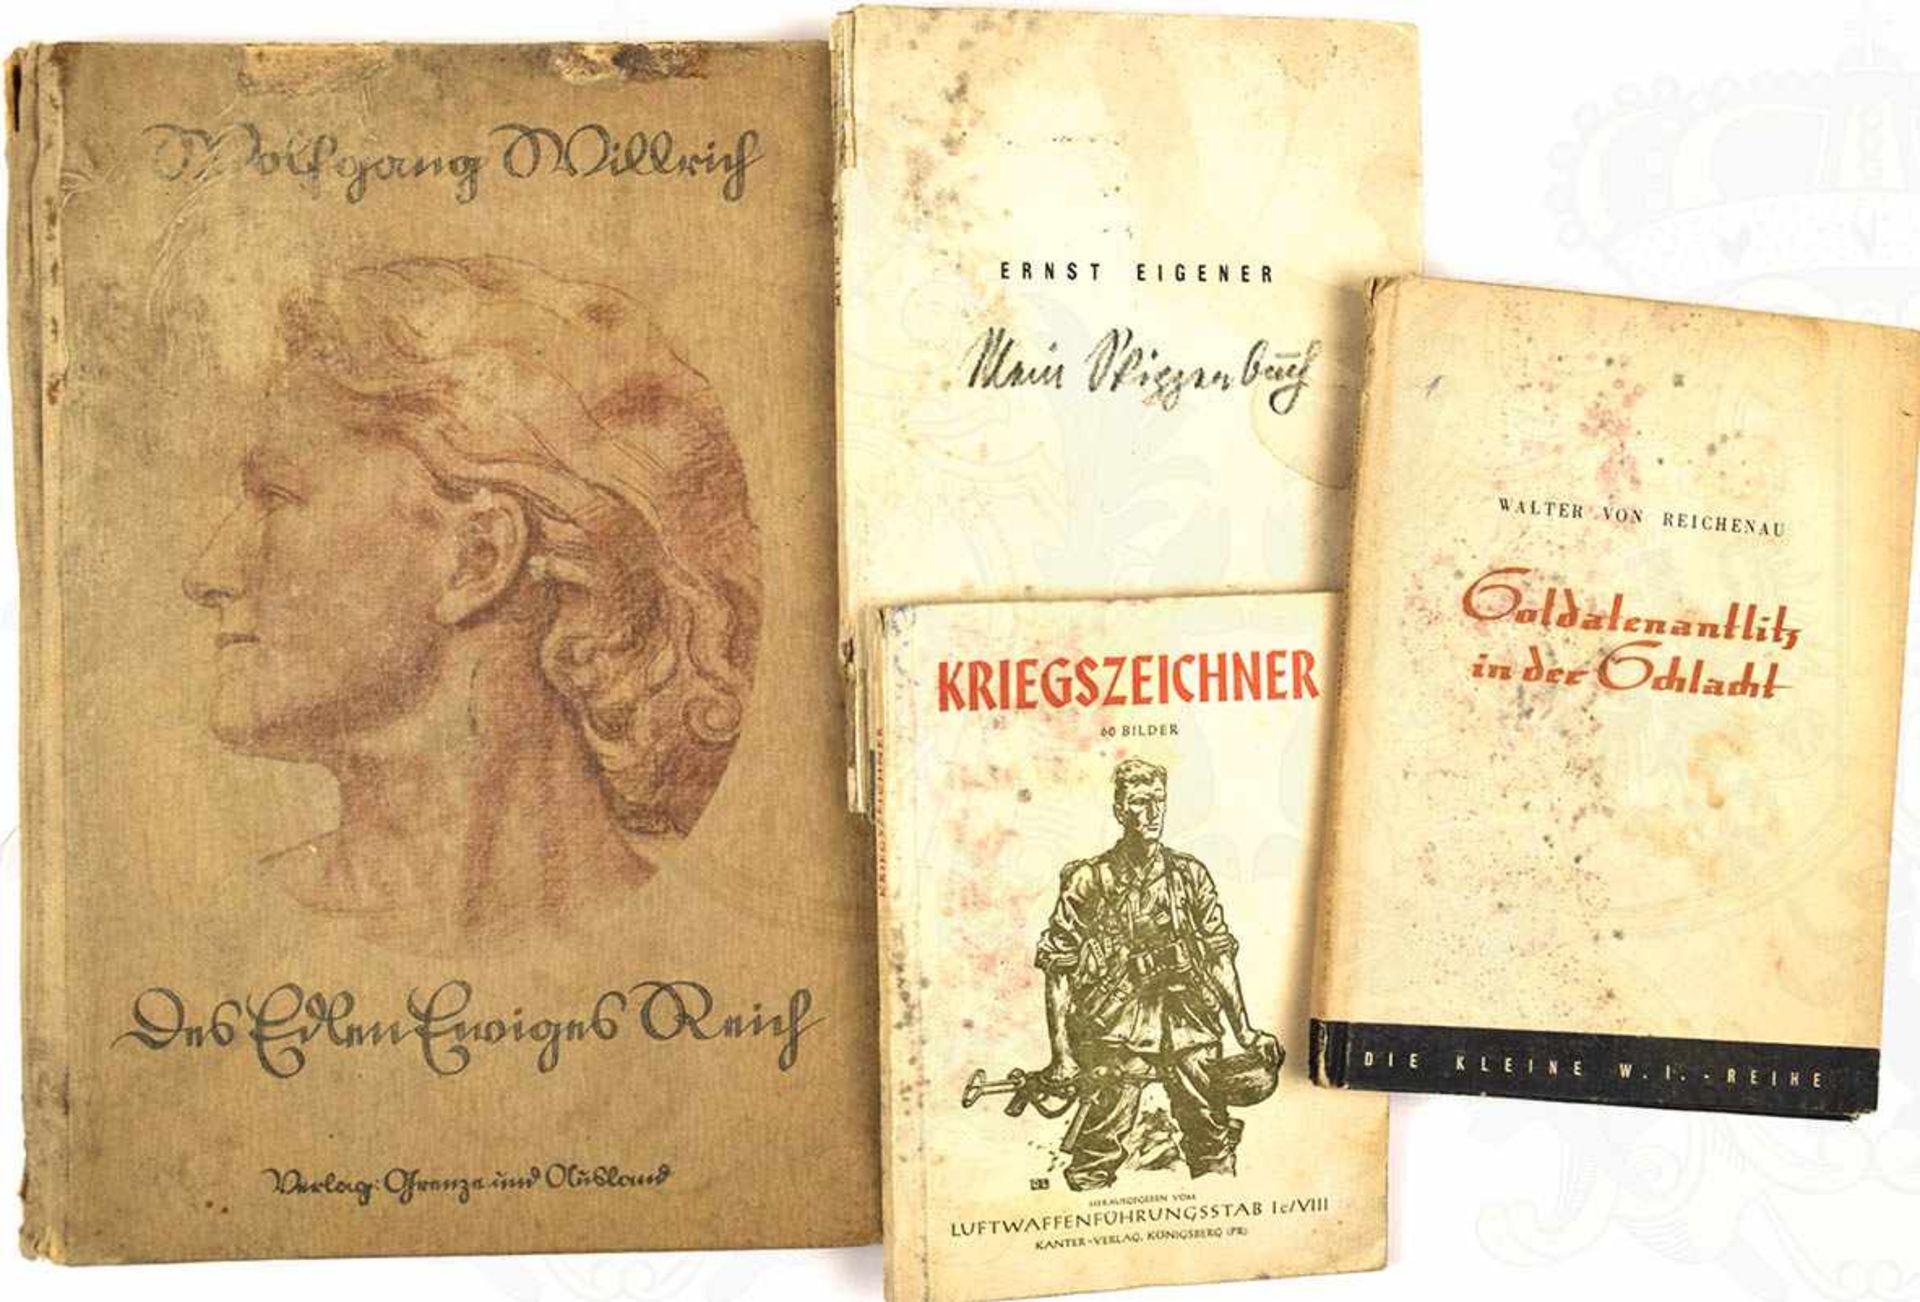 4 TITEL: „Kriegszeichner“, Hrsg. LW-Führungsstaab Ic/VIII, 1942, 64 S.; Ernst Eigener „Mein